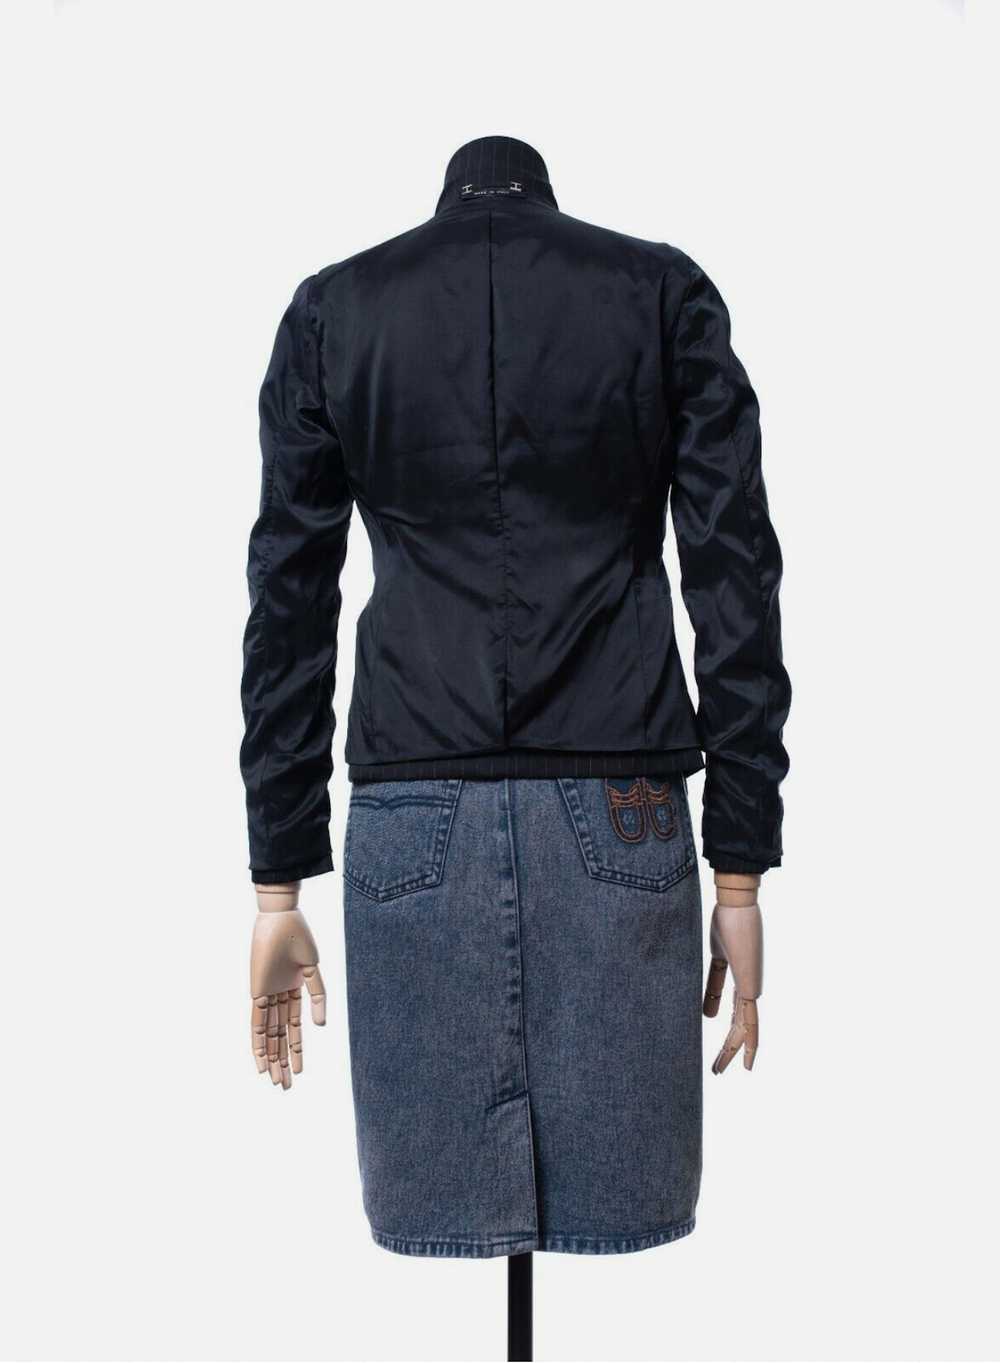 Gucci GUCCI Blazer Coat Jacket Lana Wool Striped … - image 6